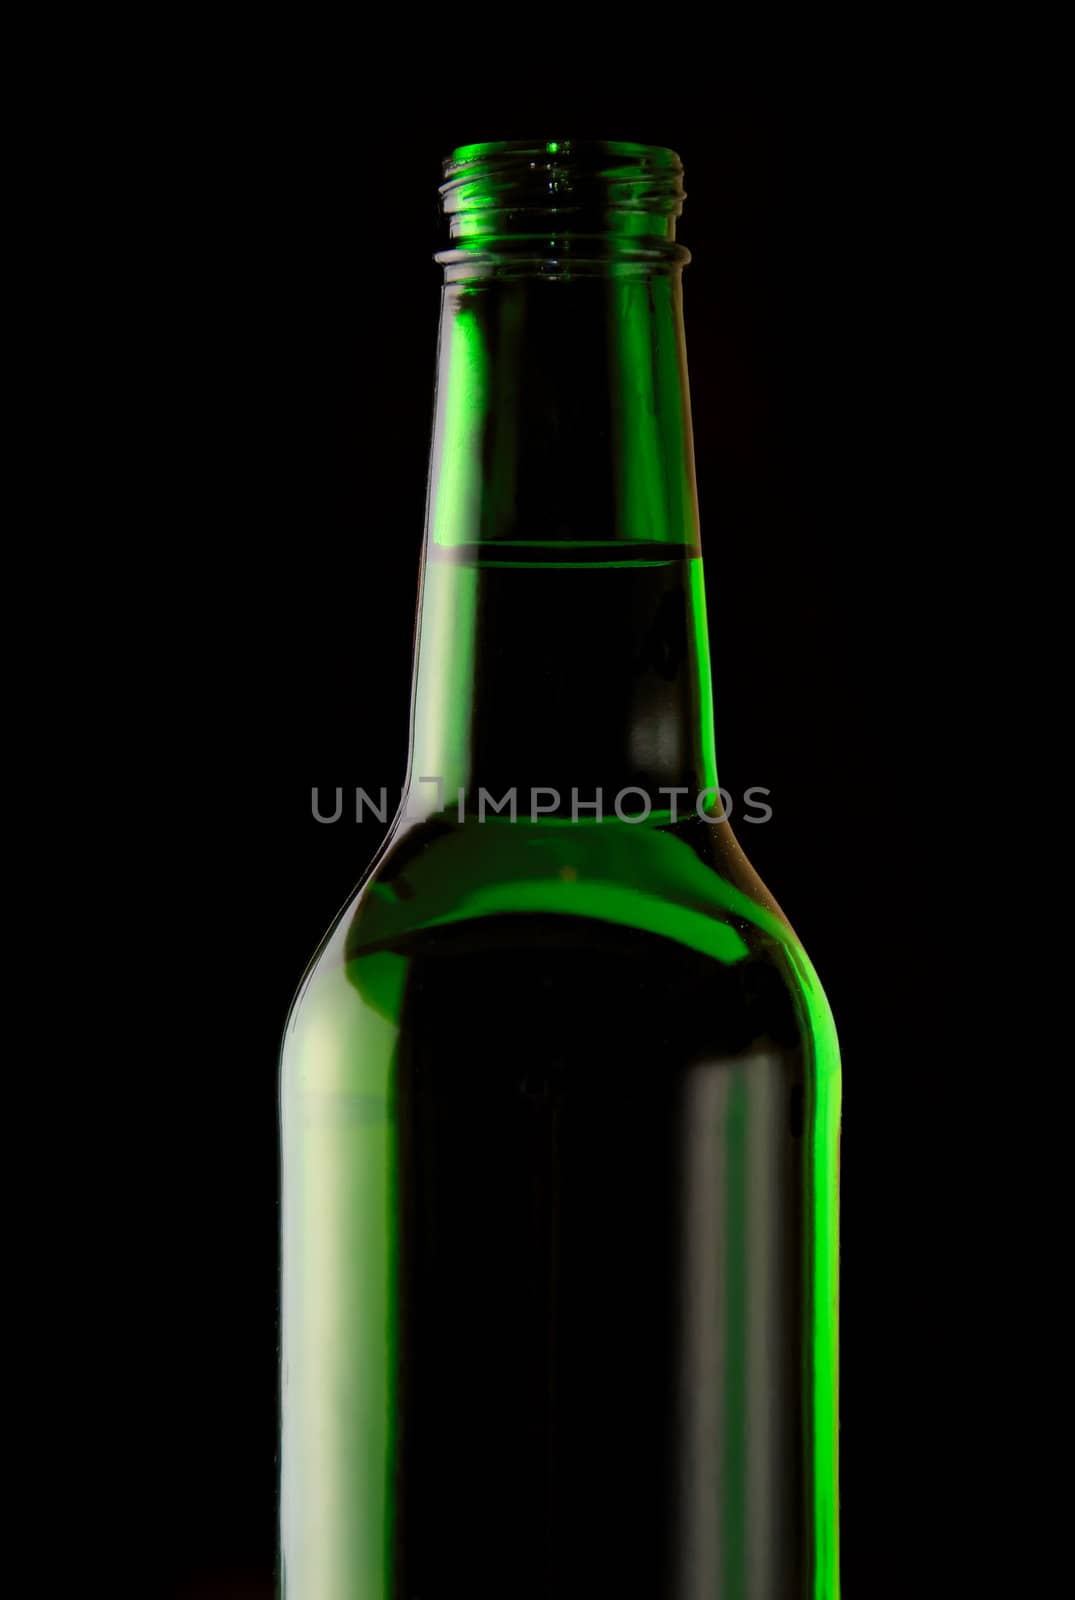 Bottles of beer by anki21